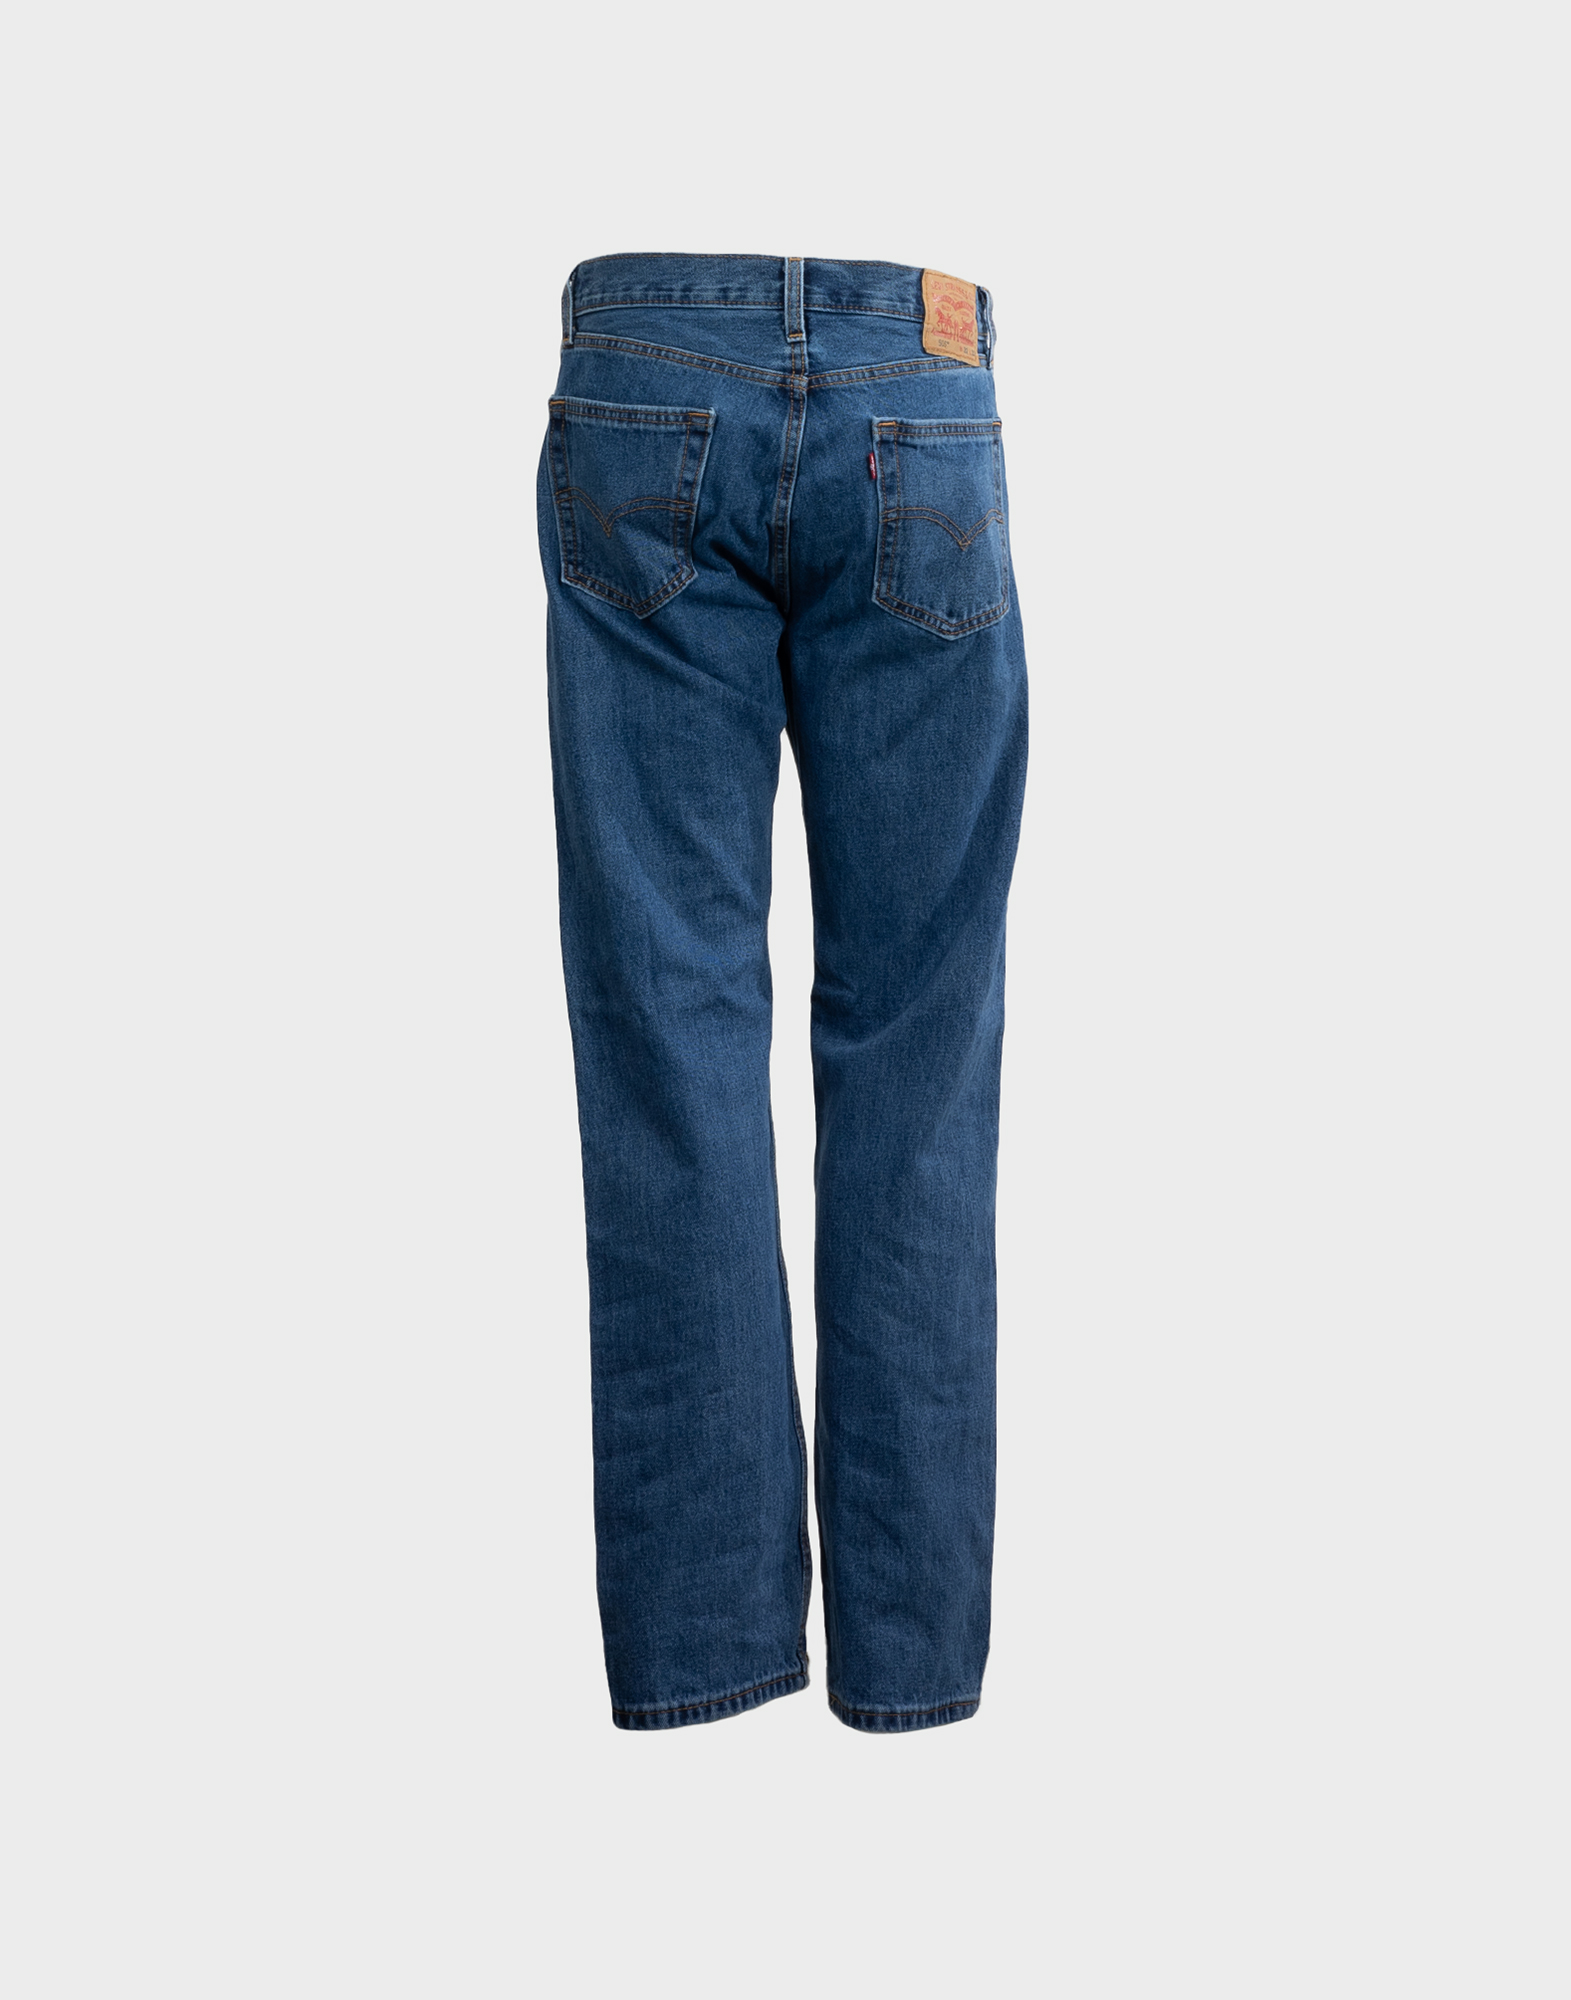 pantaloni jeans da uomo Levi's colore blu modello 505, chiusura con bottoni